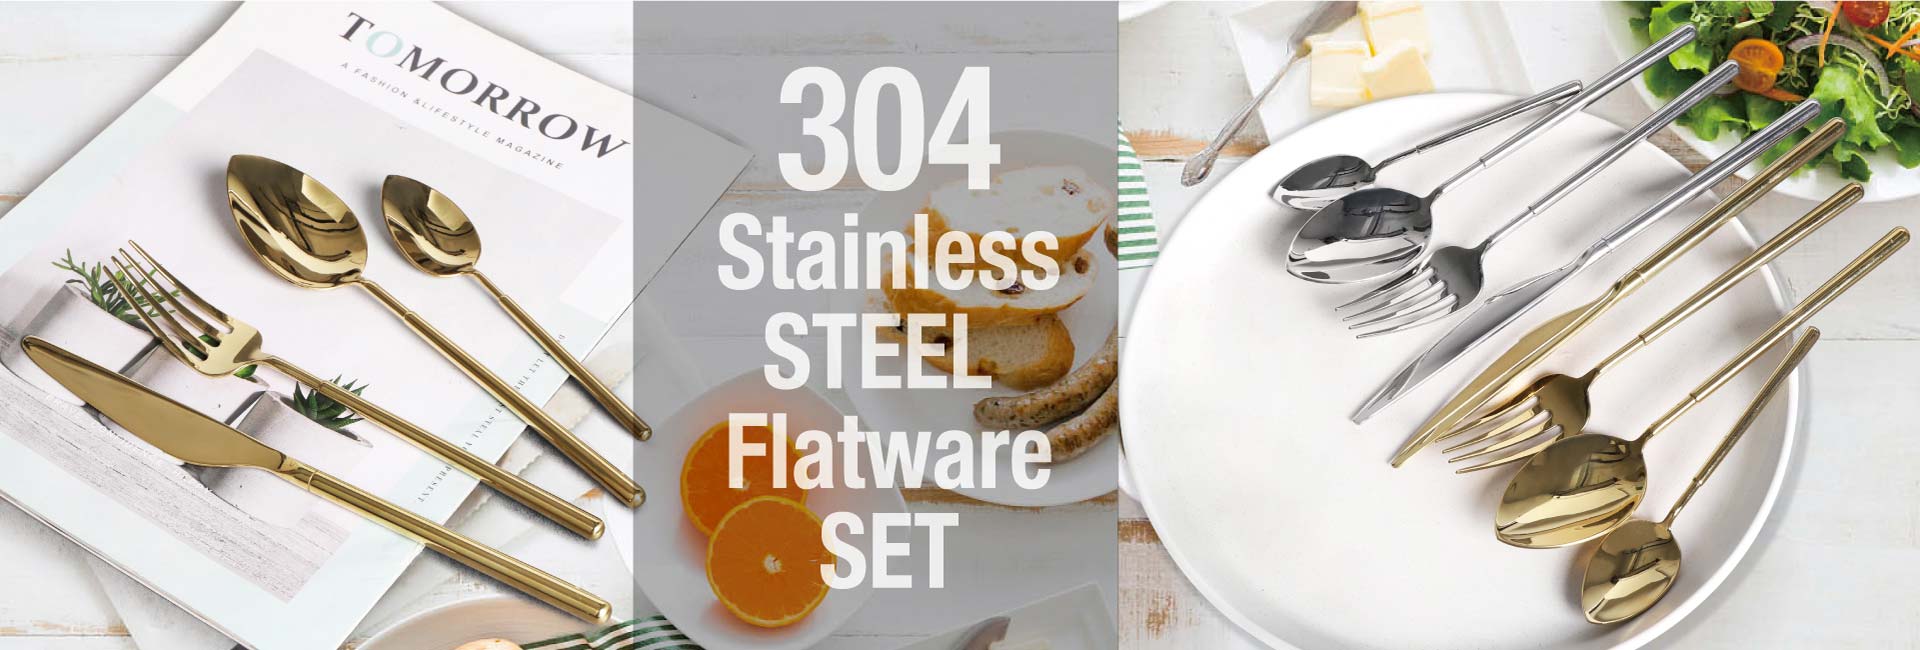 stain-steel-flatware-set